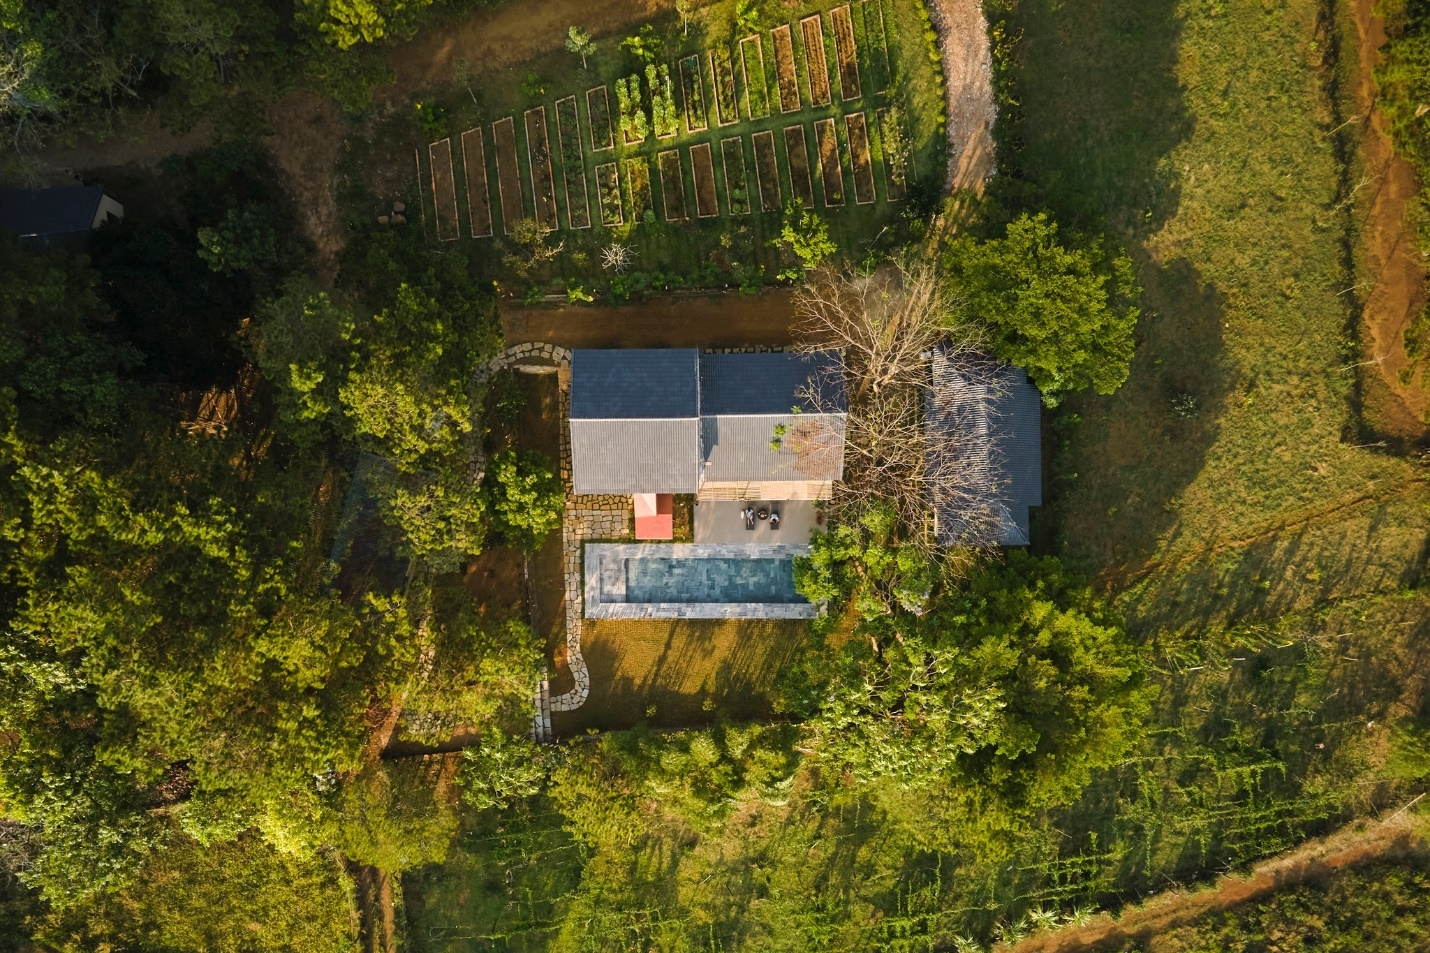 Ngôi nhà trên đỉnh đồi ở Bảo Lộc mang màu sắc vùng đất đỏ, tái sử dụng đồ cũ